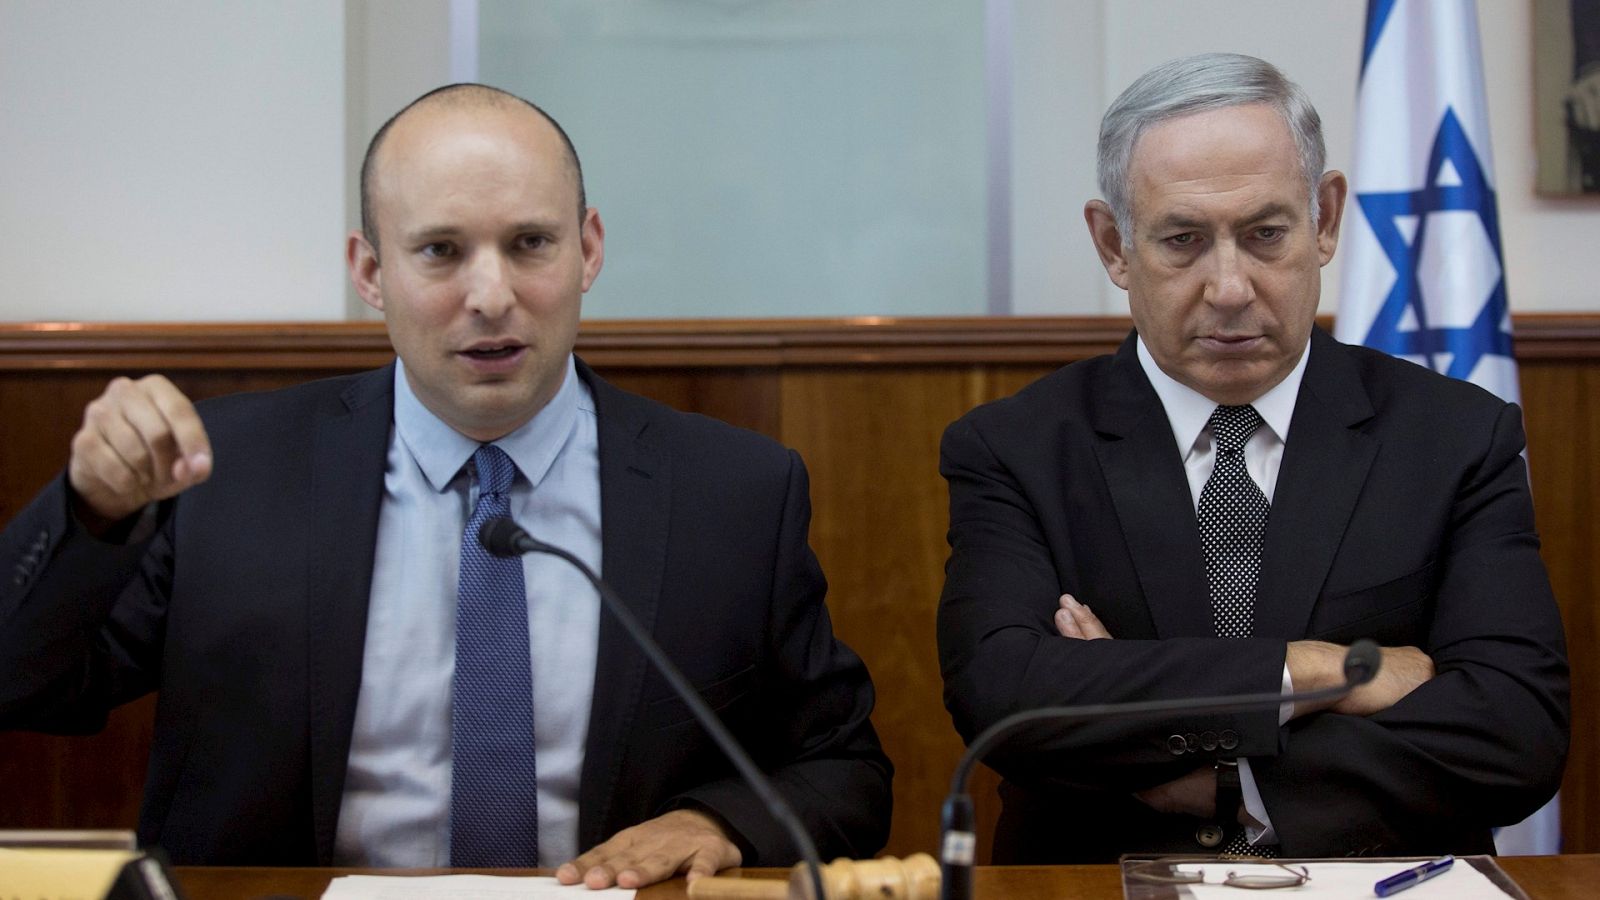 14 horas Fin de Semana - Nueva página política en Israel sin Netanyahu como primer ministro - Escuchar ahora